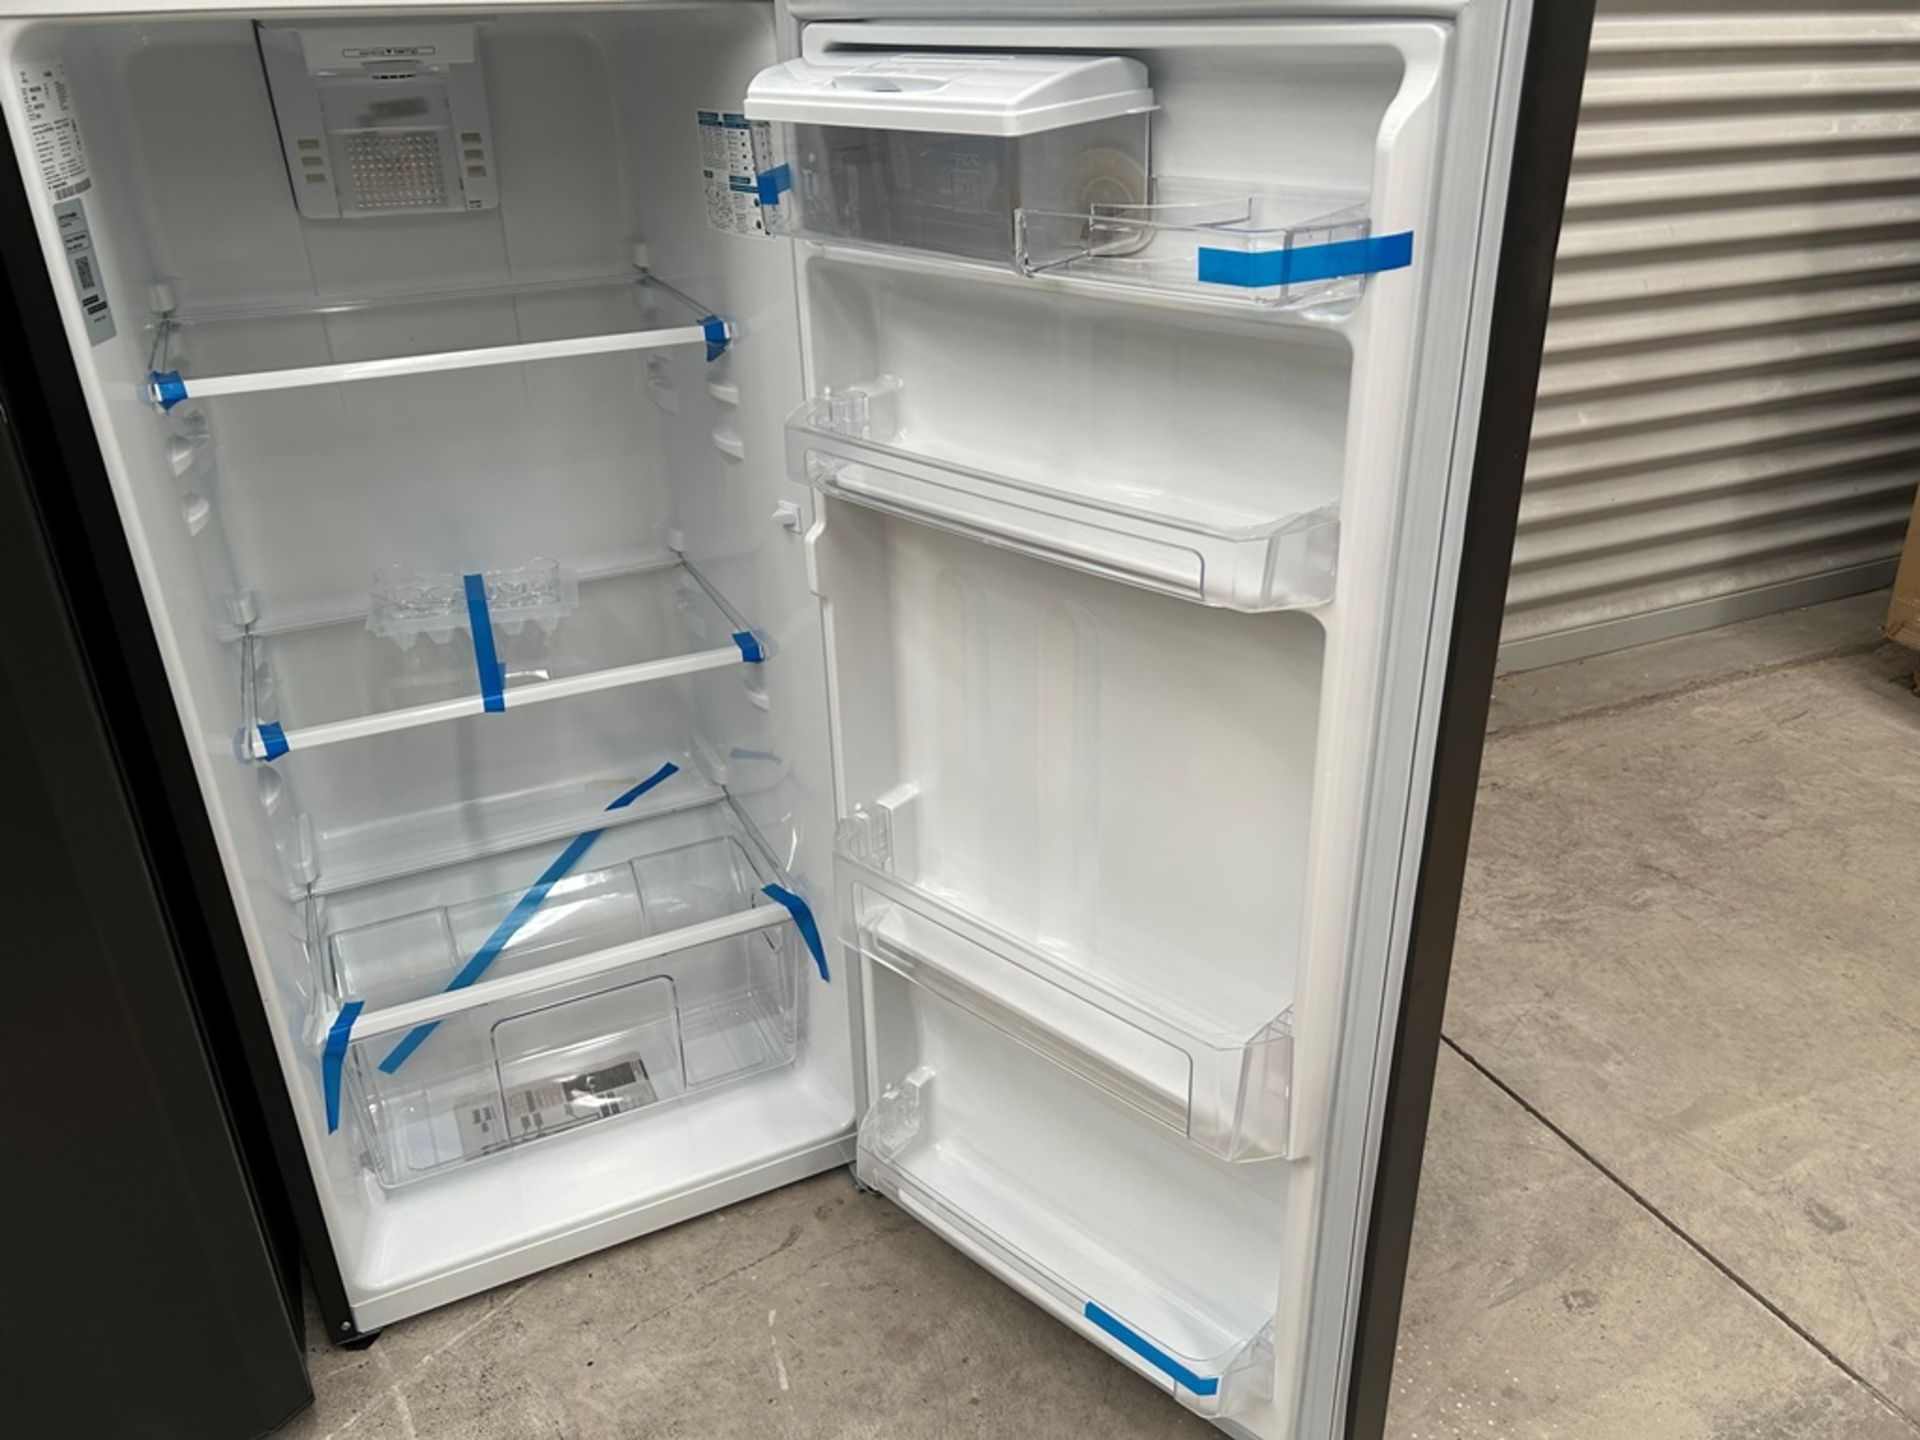 Lote de 2 refrigeradores contiene: 1 Refrigerador con dispensador de agua Marca MABE, Modelo RMA300 - Image 6 of 18